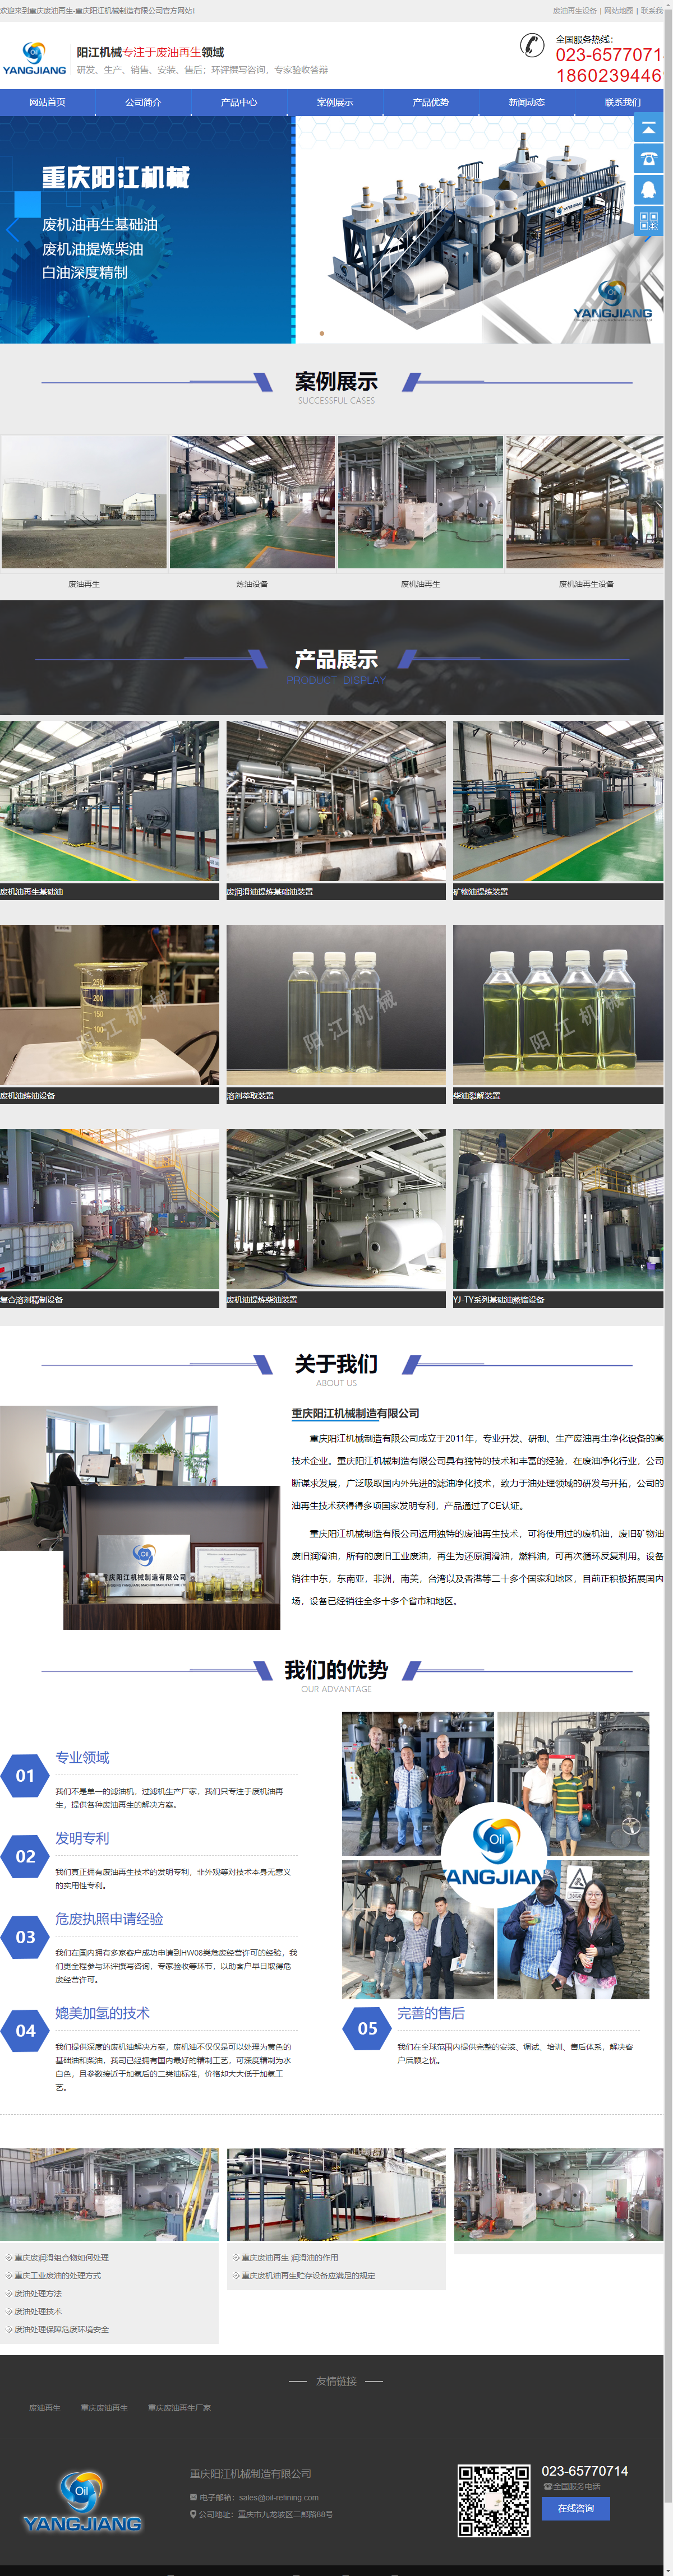 重庆阳江机械制造有限公司网站案例